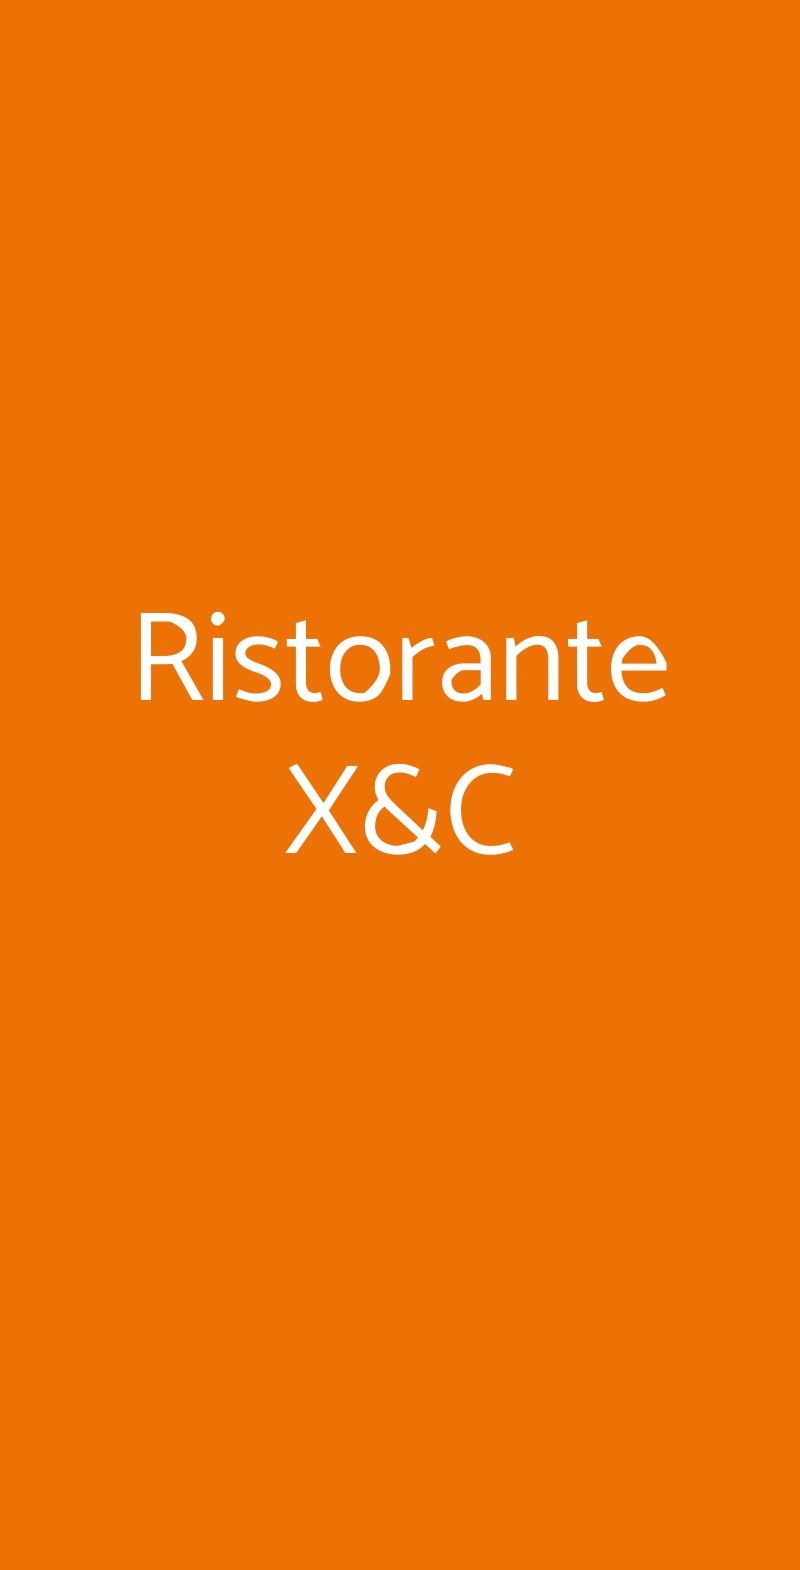 Ristorante X&C Milano menù 1 pagina